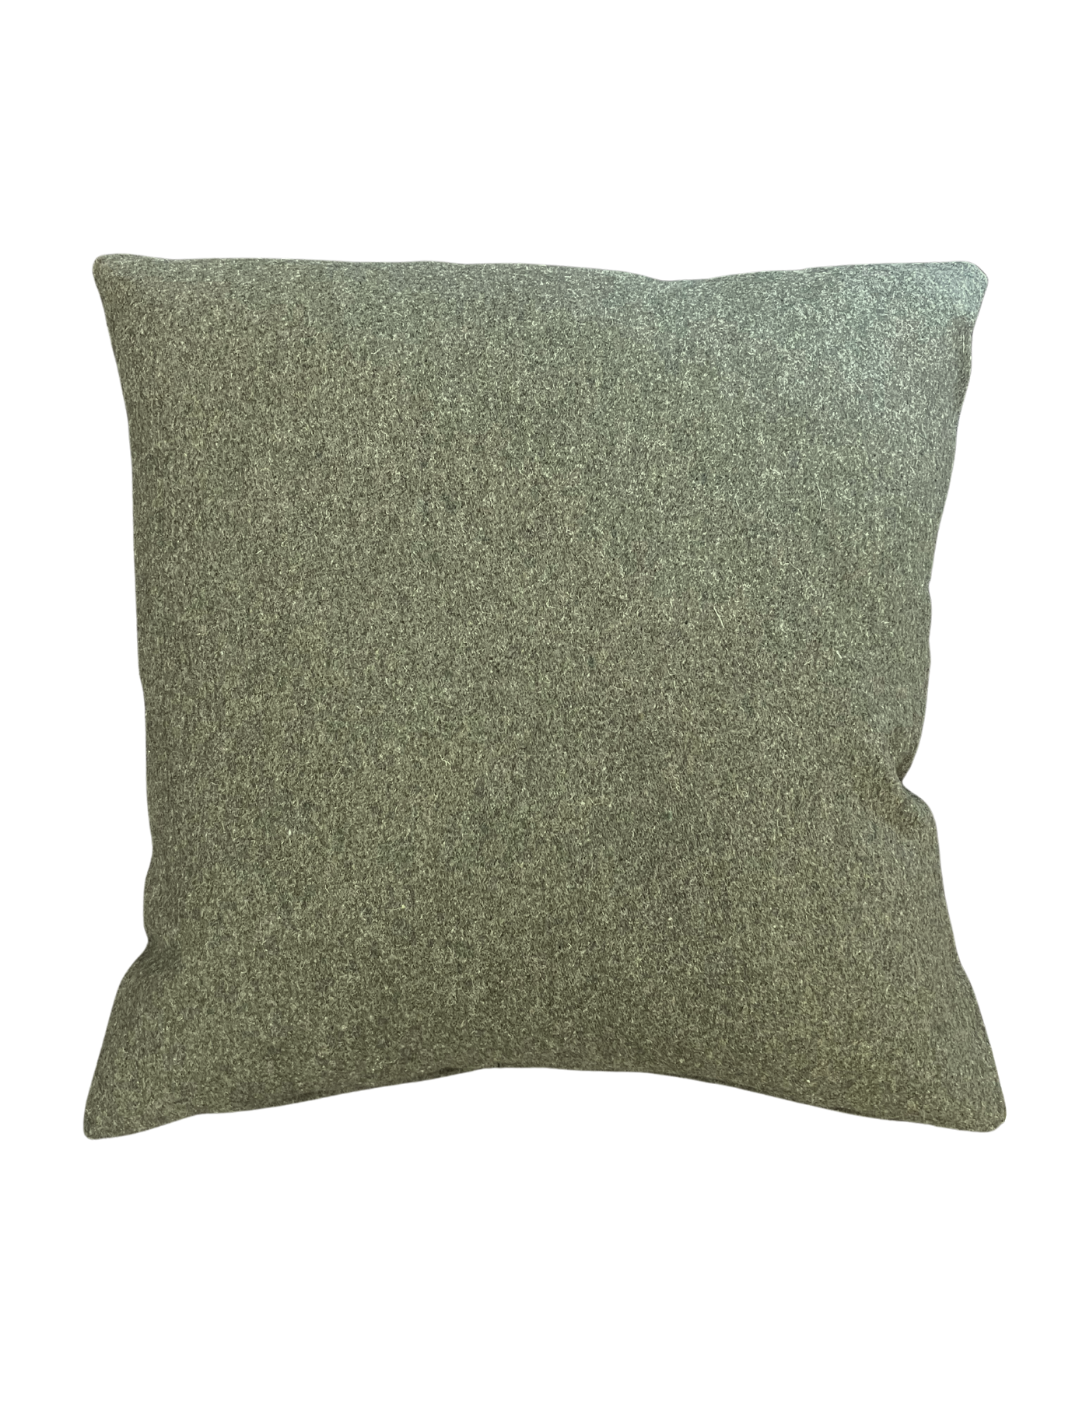 Forest Green Throw Pillow